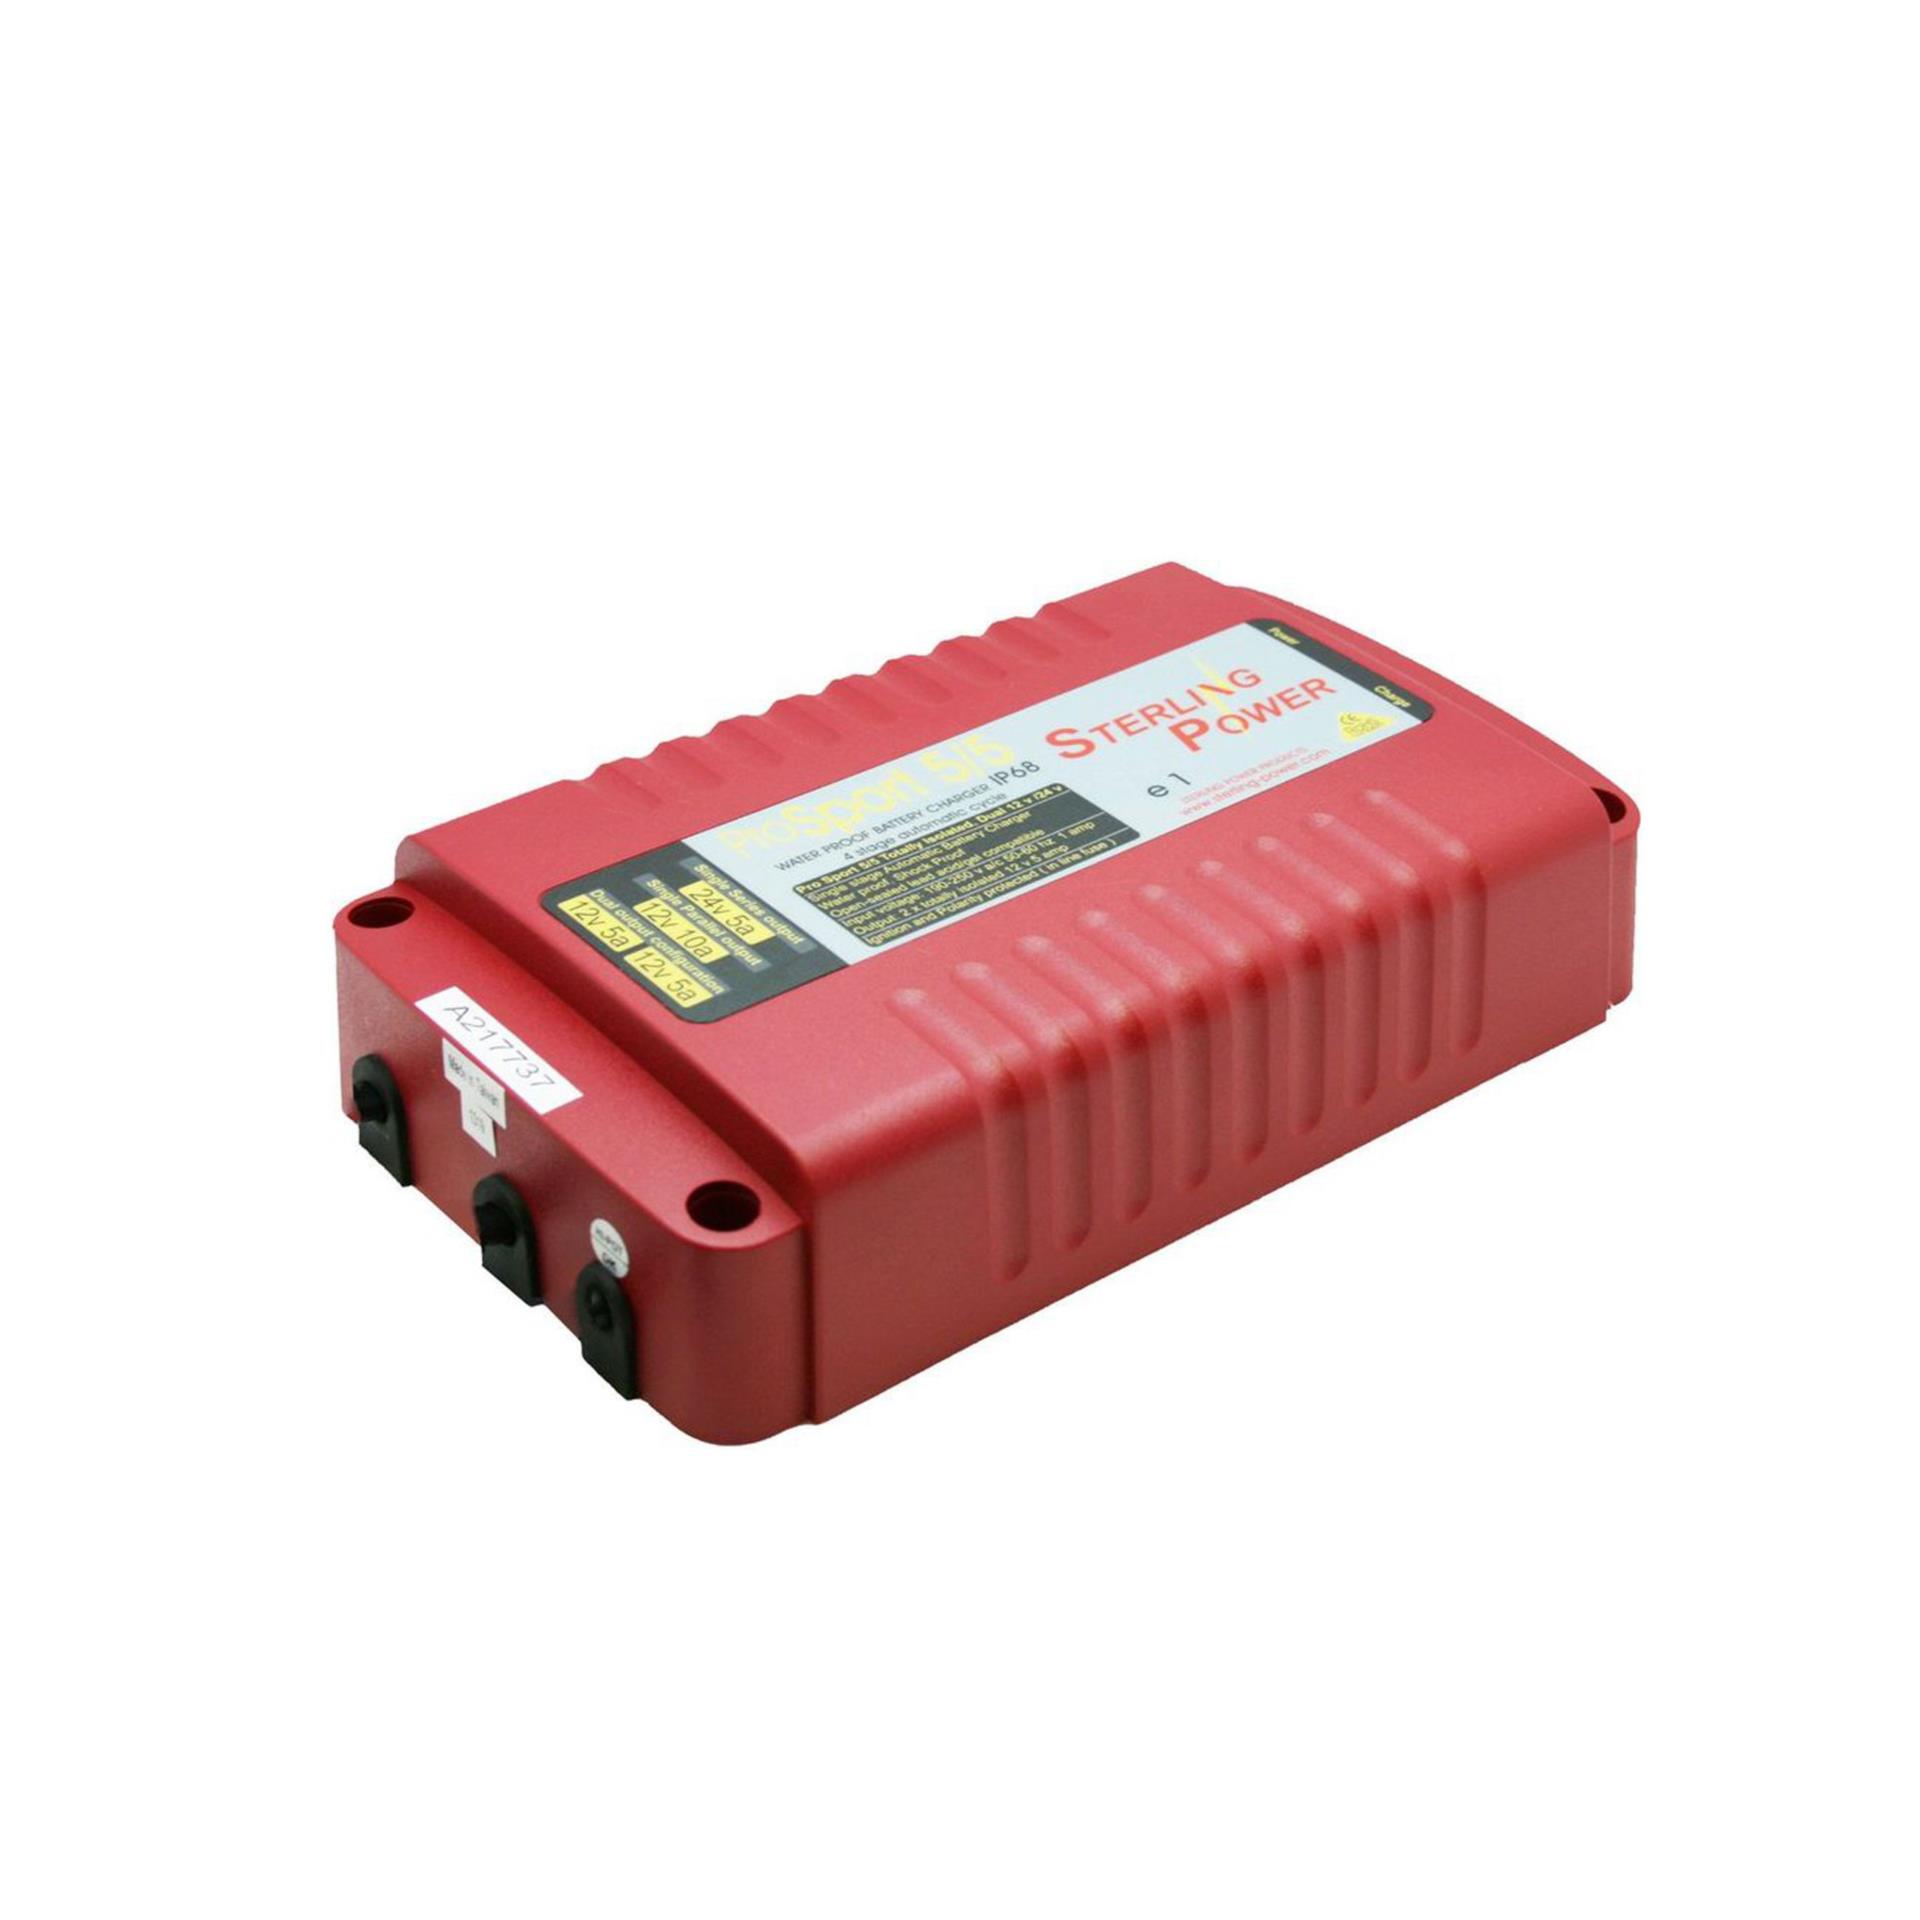 Batterie-zu-Batterie Ladegerät 12V-12V, 50A